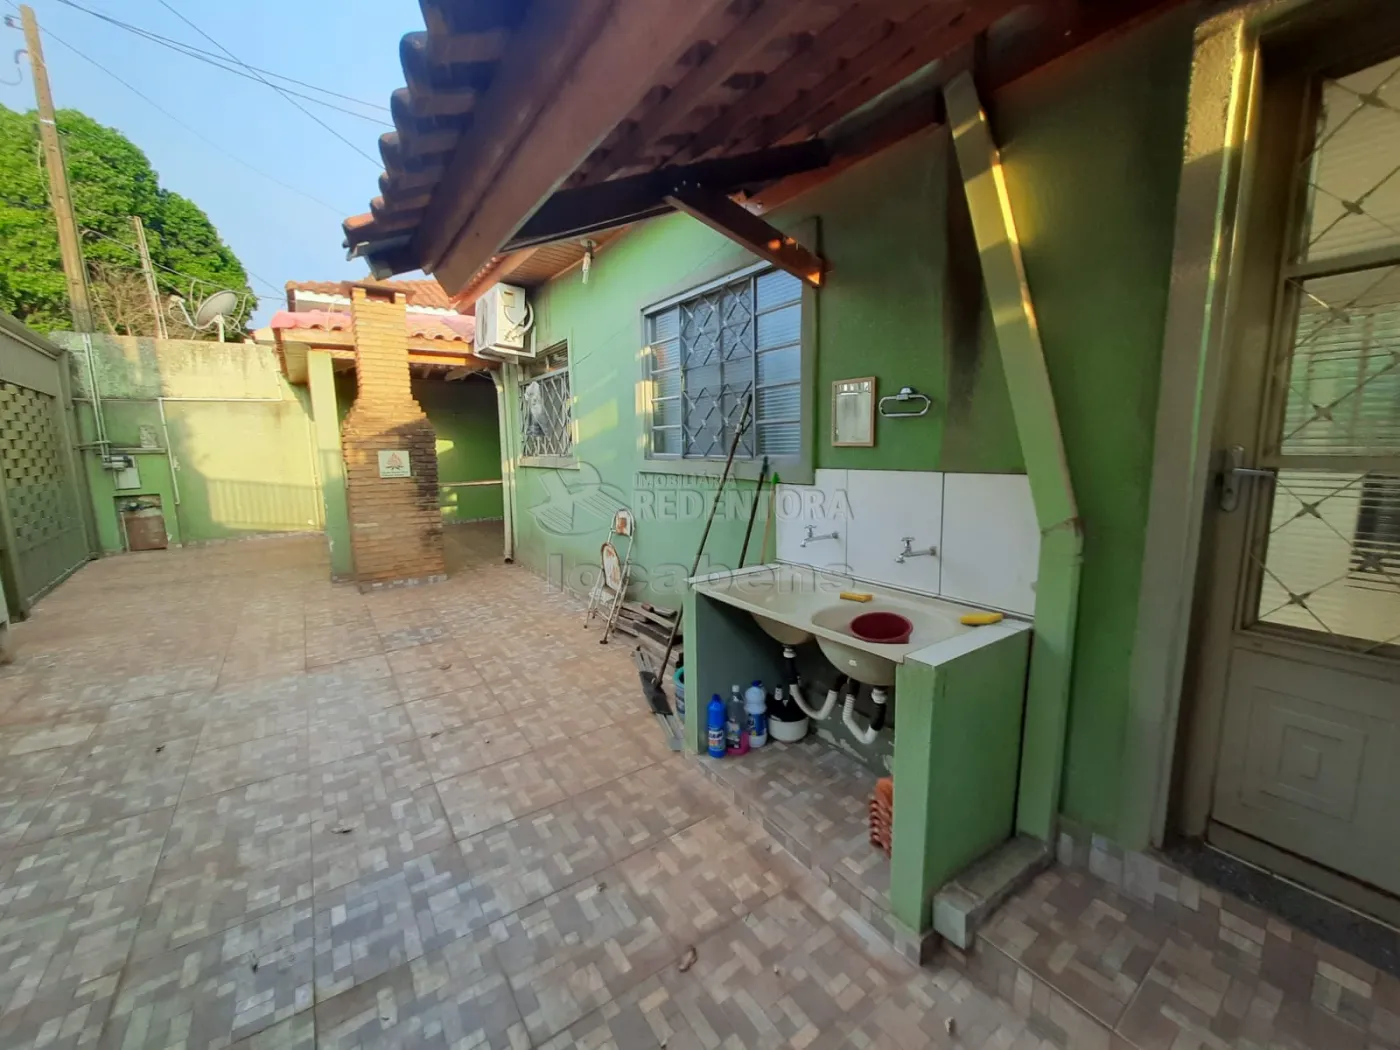 Alugar Casa / Padrão em São José do Rio Preto apenas R$ 1.200,00 - Foto 2